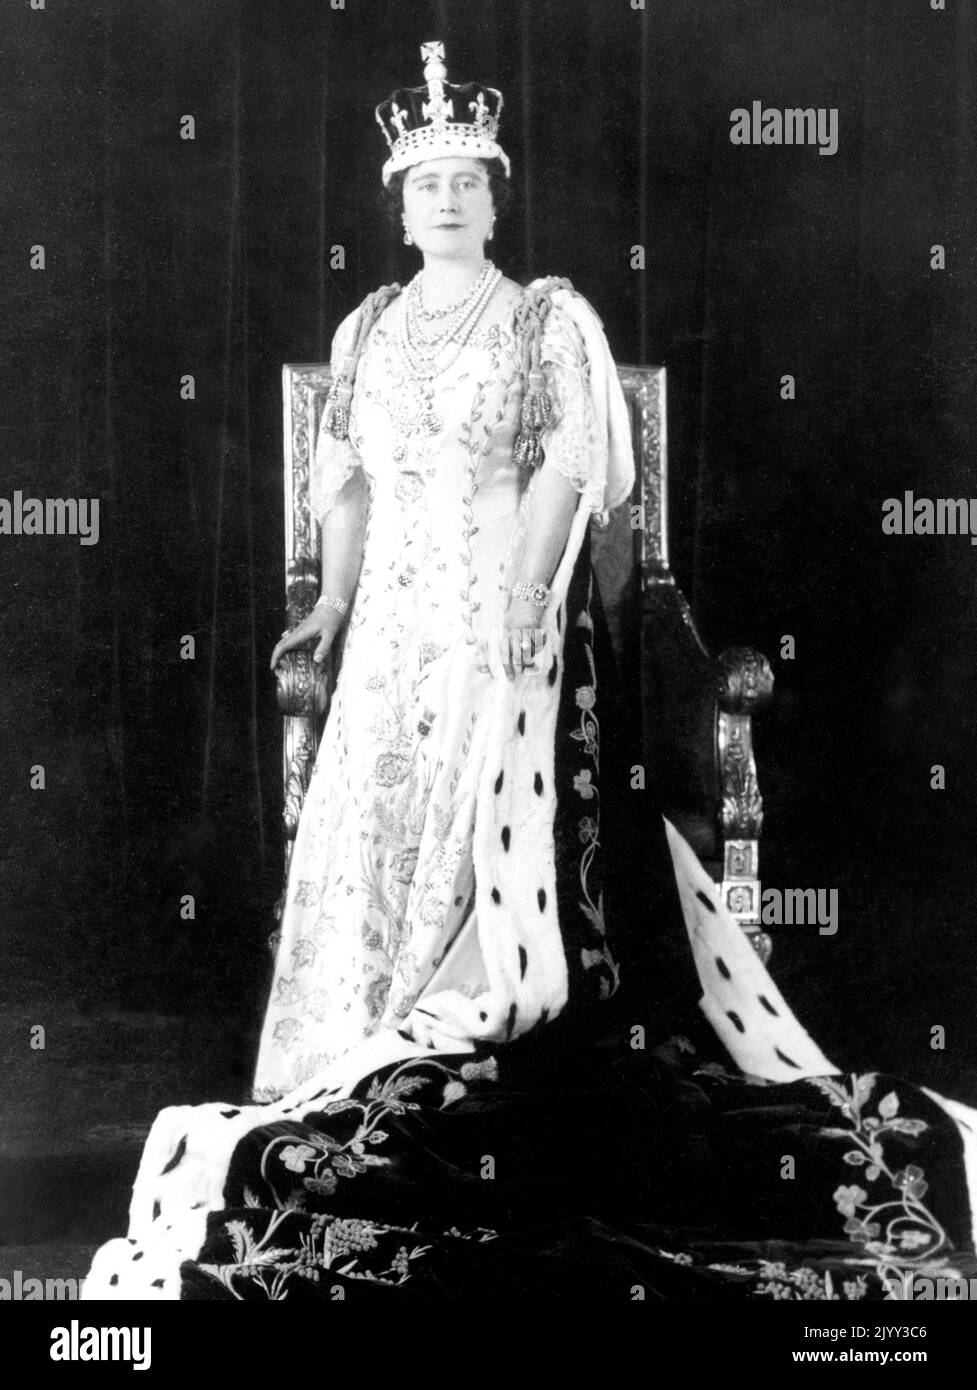 Aktenfoto vom 12/5/1937 von Königin Elizabeth mit ihrer Krone und ihren Krönungsroben. Ausgabedatum: Donnerstag, 8. September 2022. Stockfoto